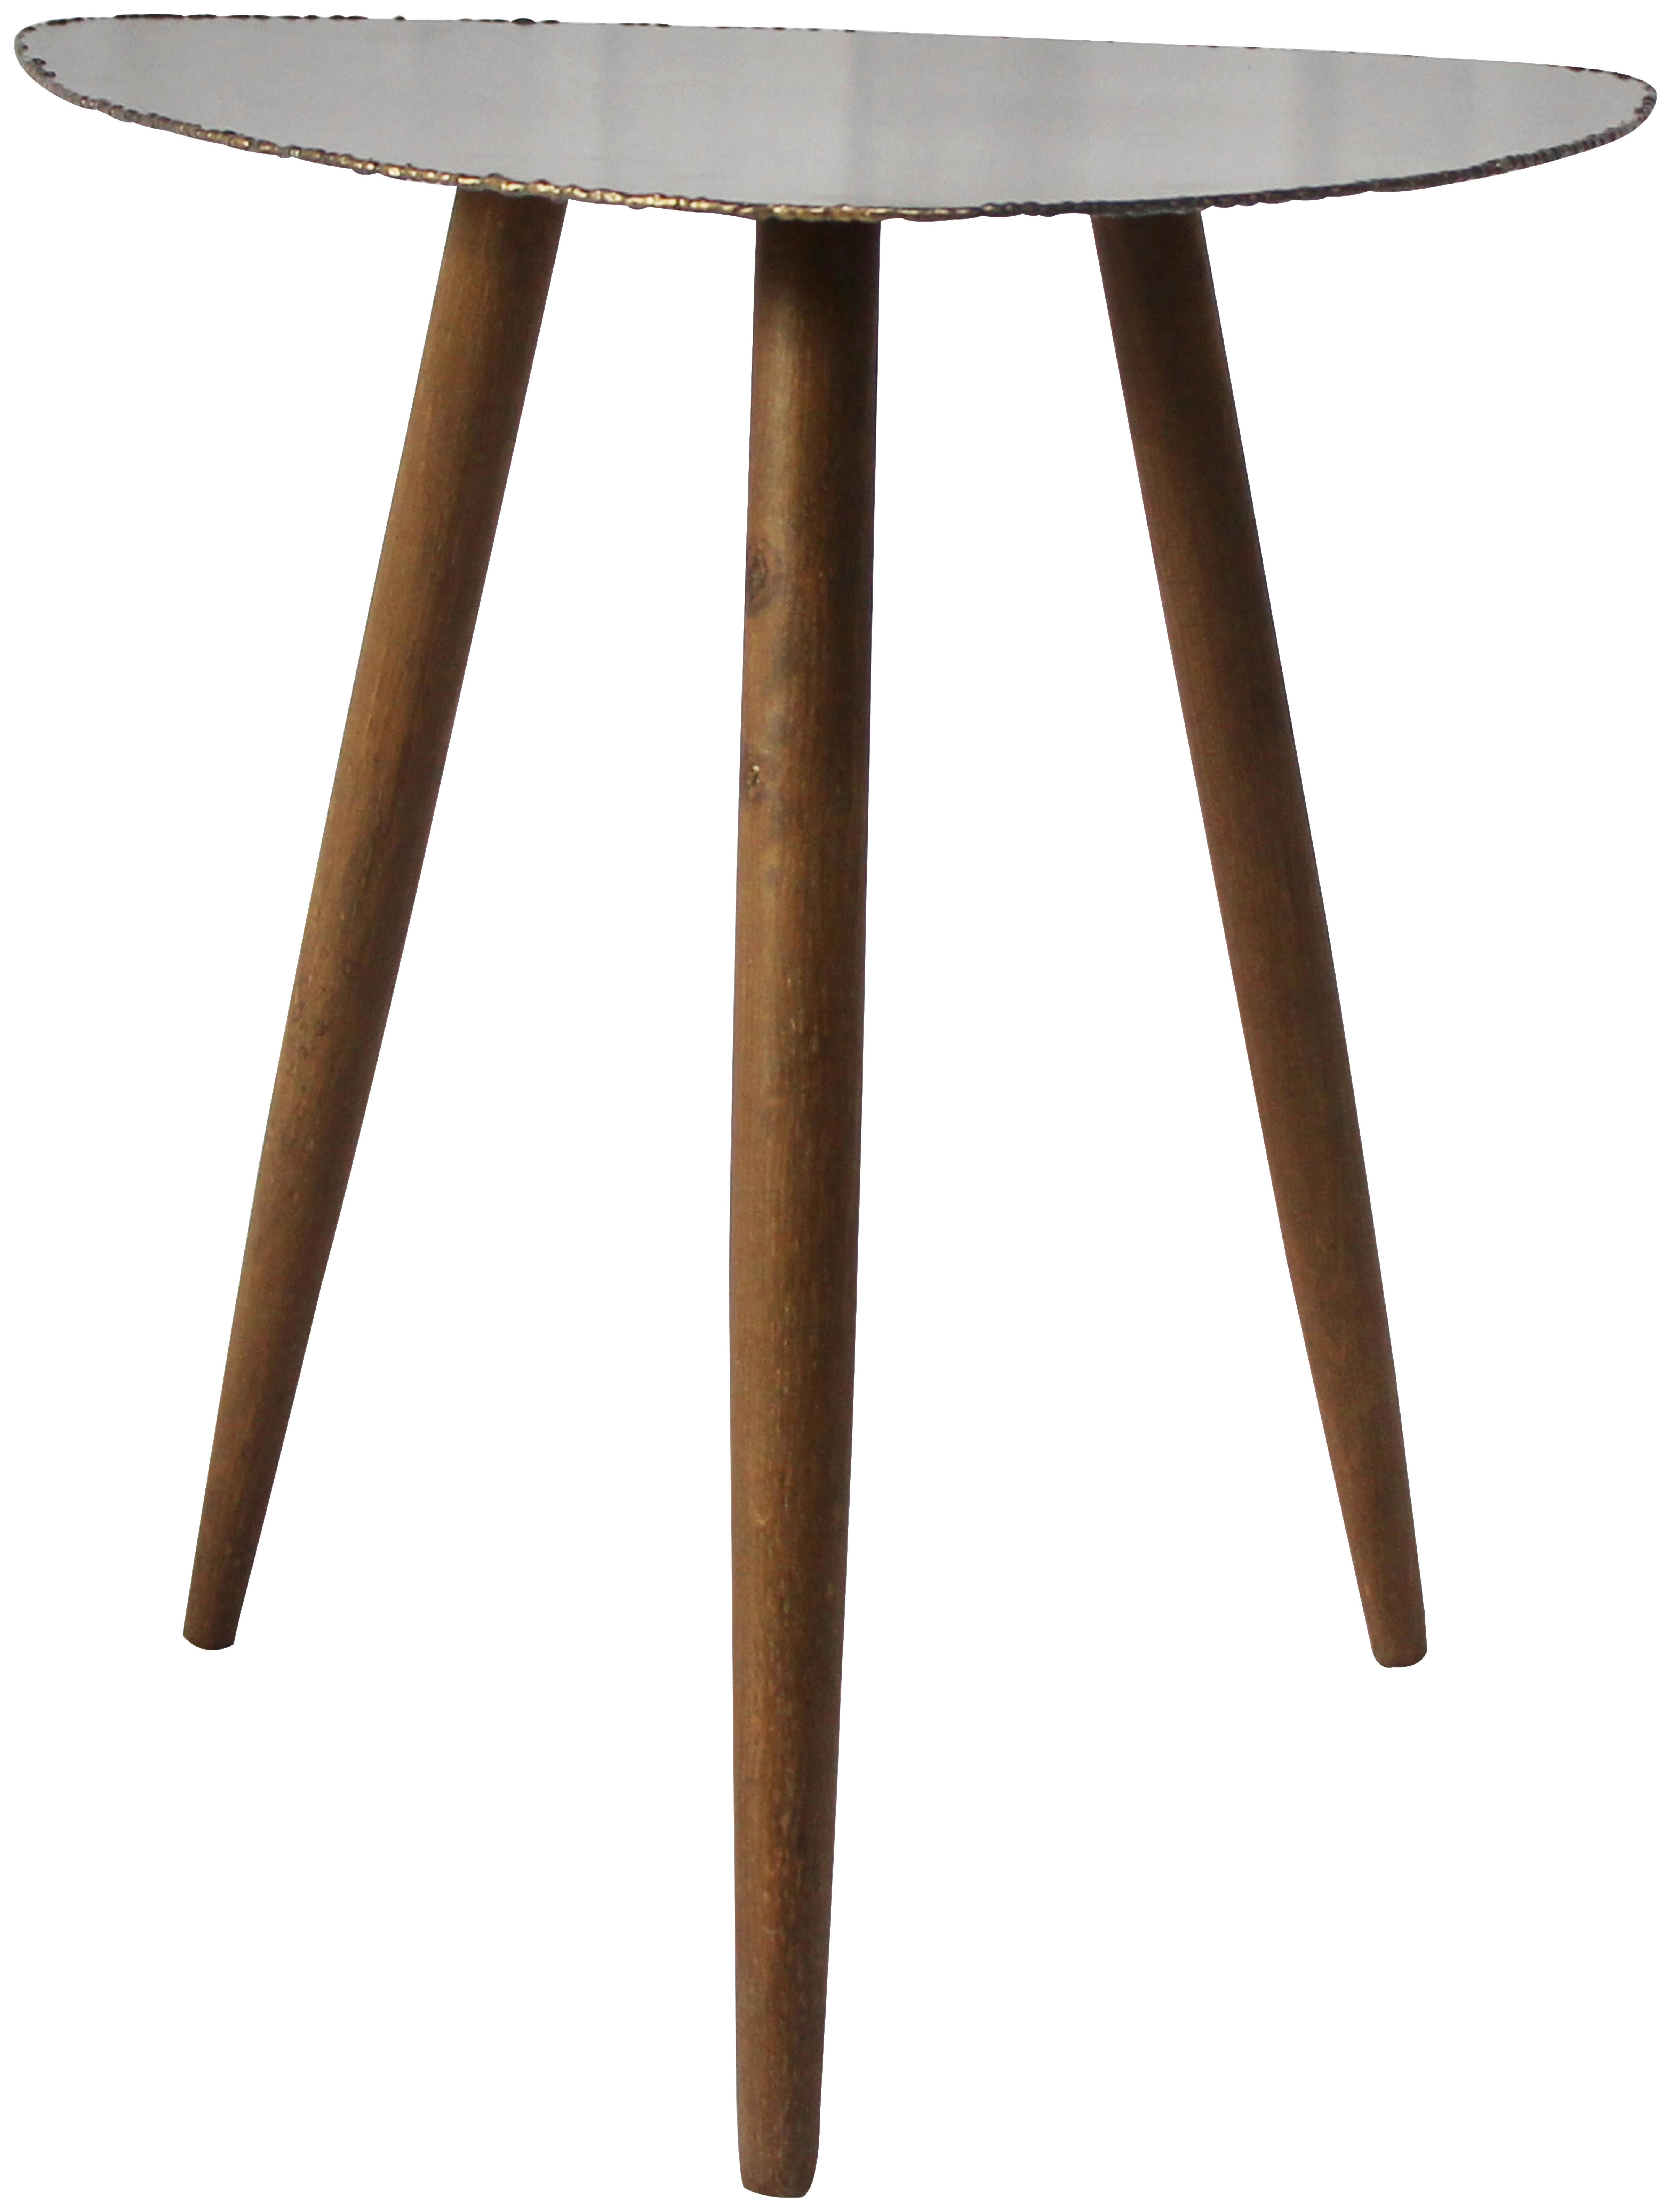 Beistelltisch mit Tischplatte Grau/Naturfarben - Braun/Naturfarben, Trend, Holz/Metall (50/49/53cm)